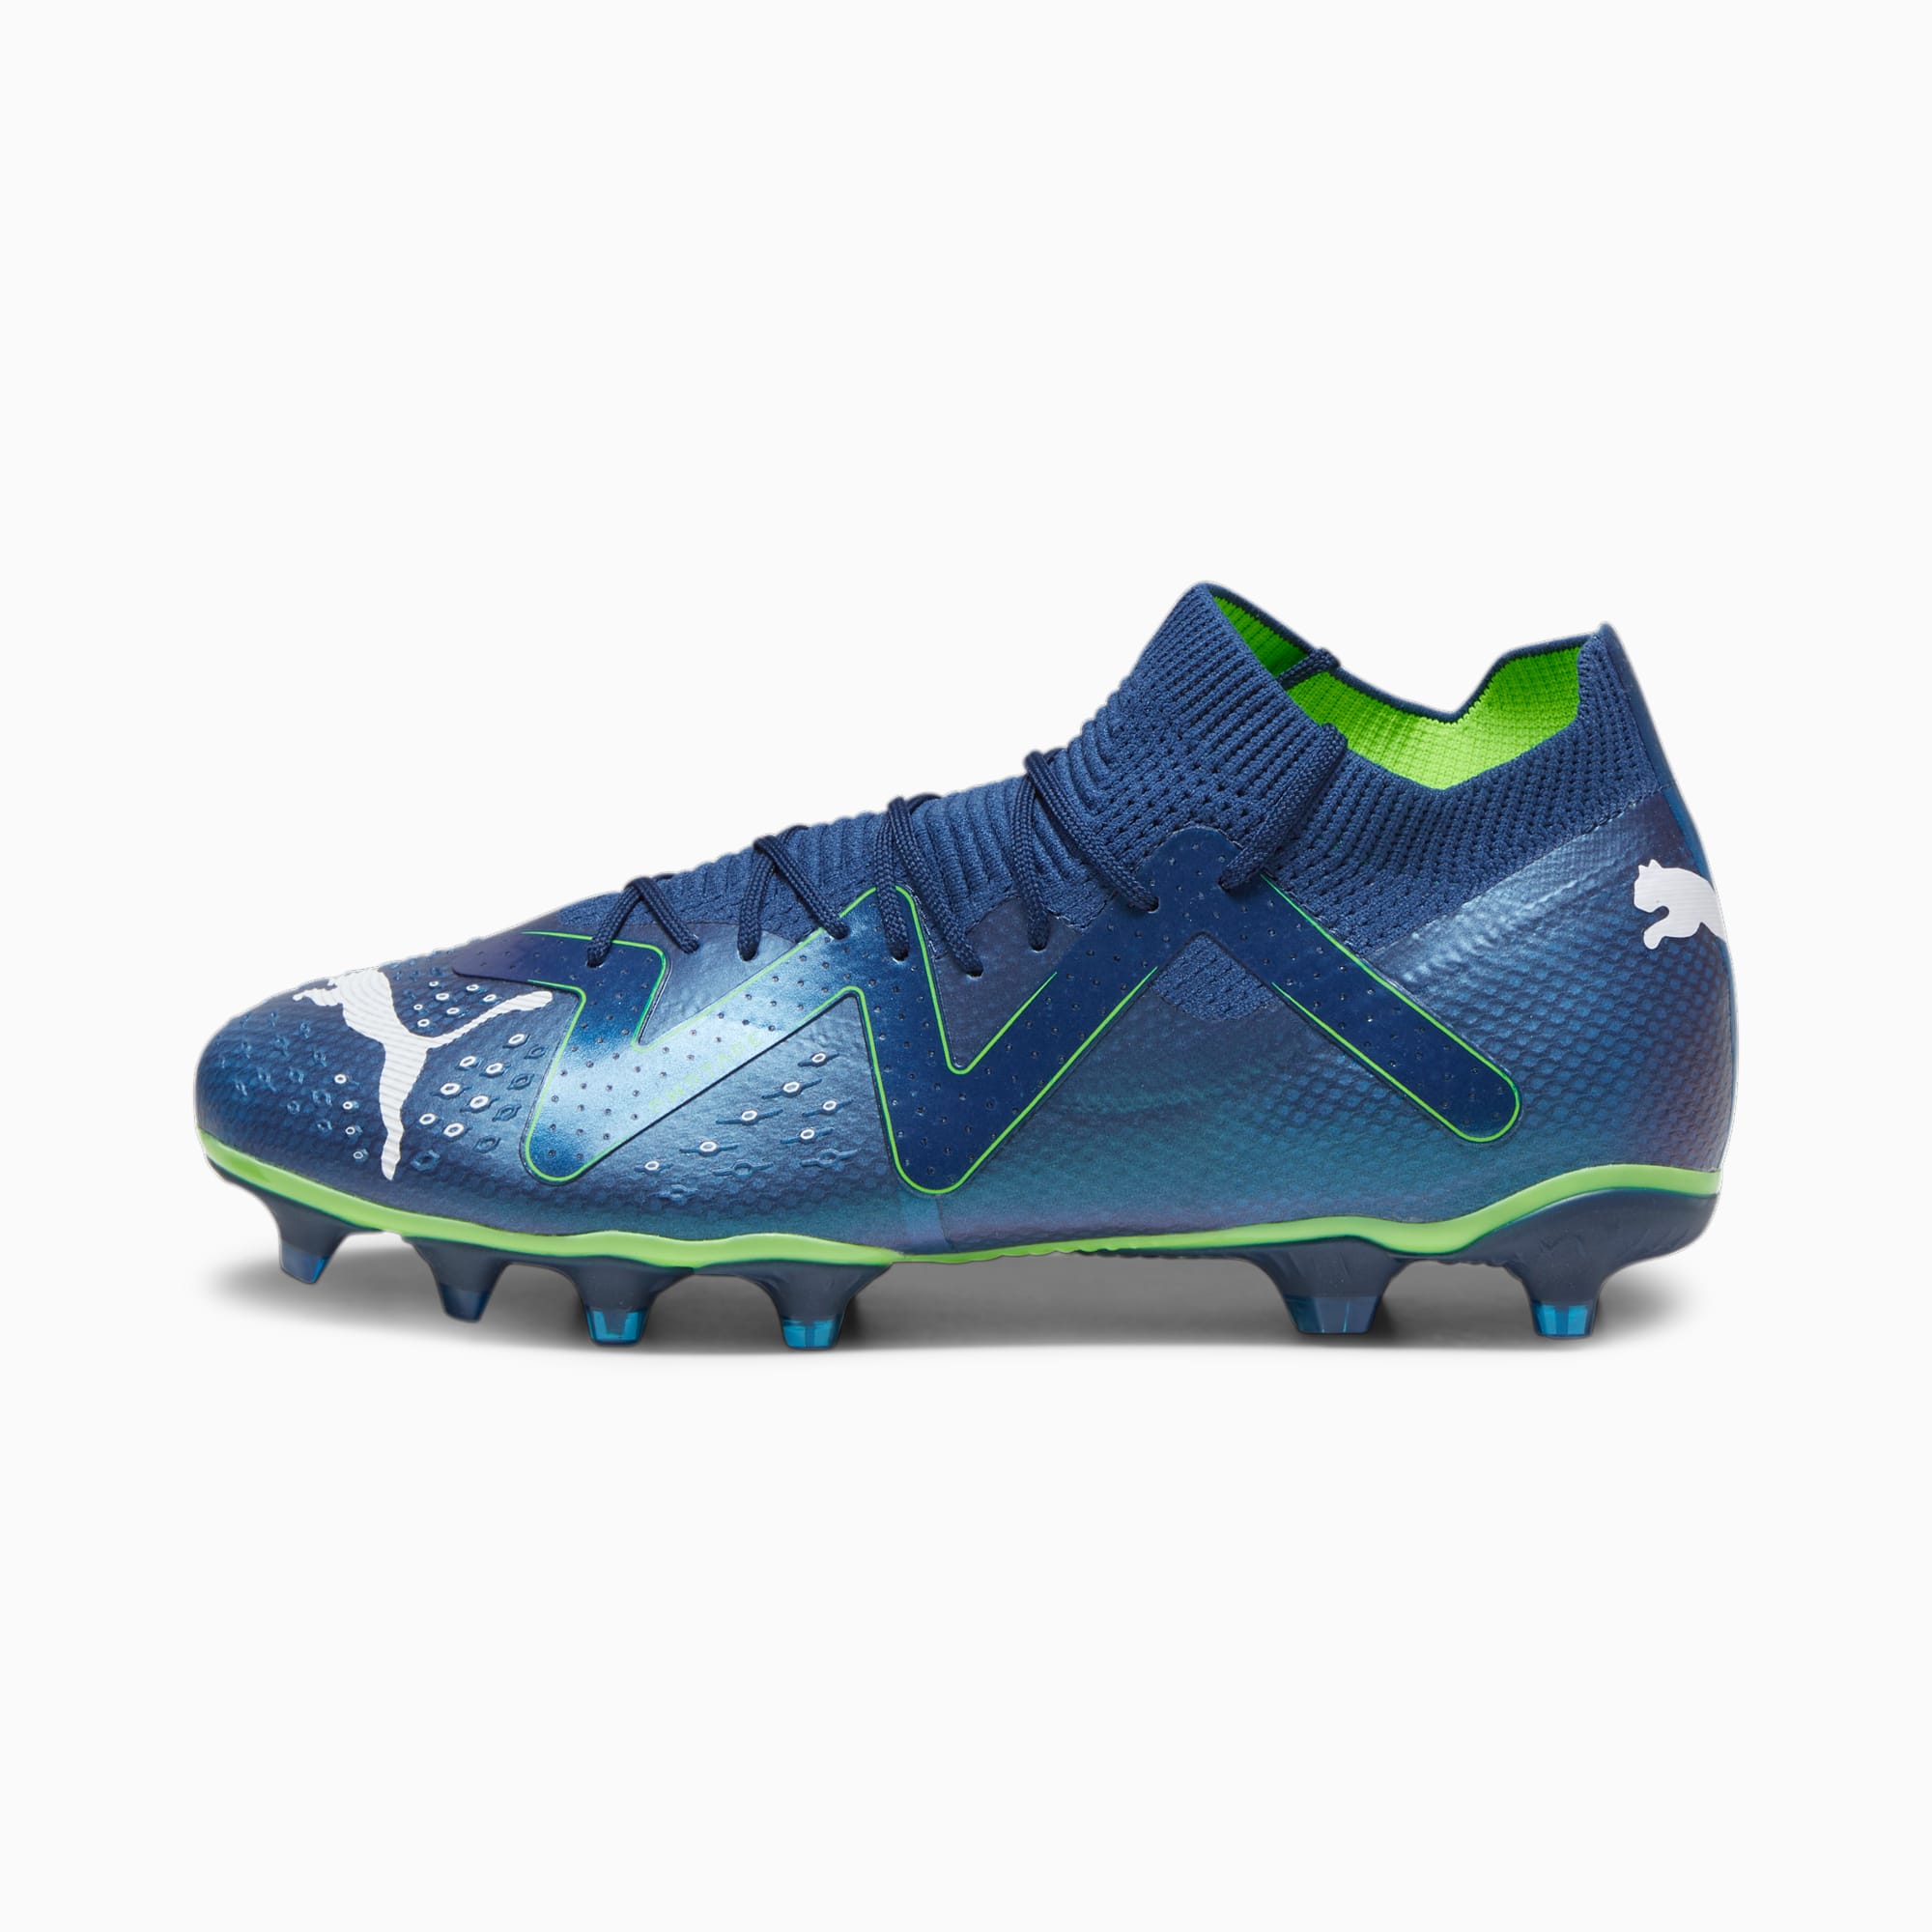 PUMA Chaussures De Football FUTURE PRO FG/AG Pour Homme, Bleu/Vert/Blanc